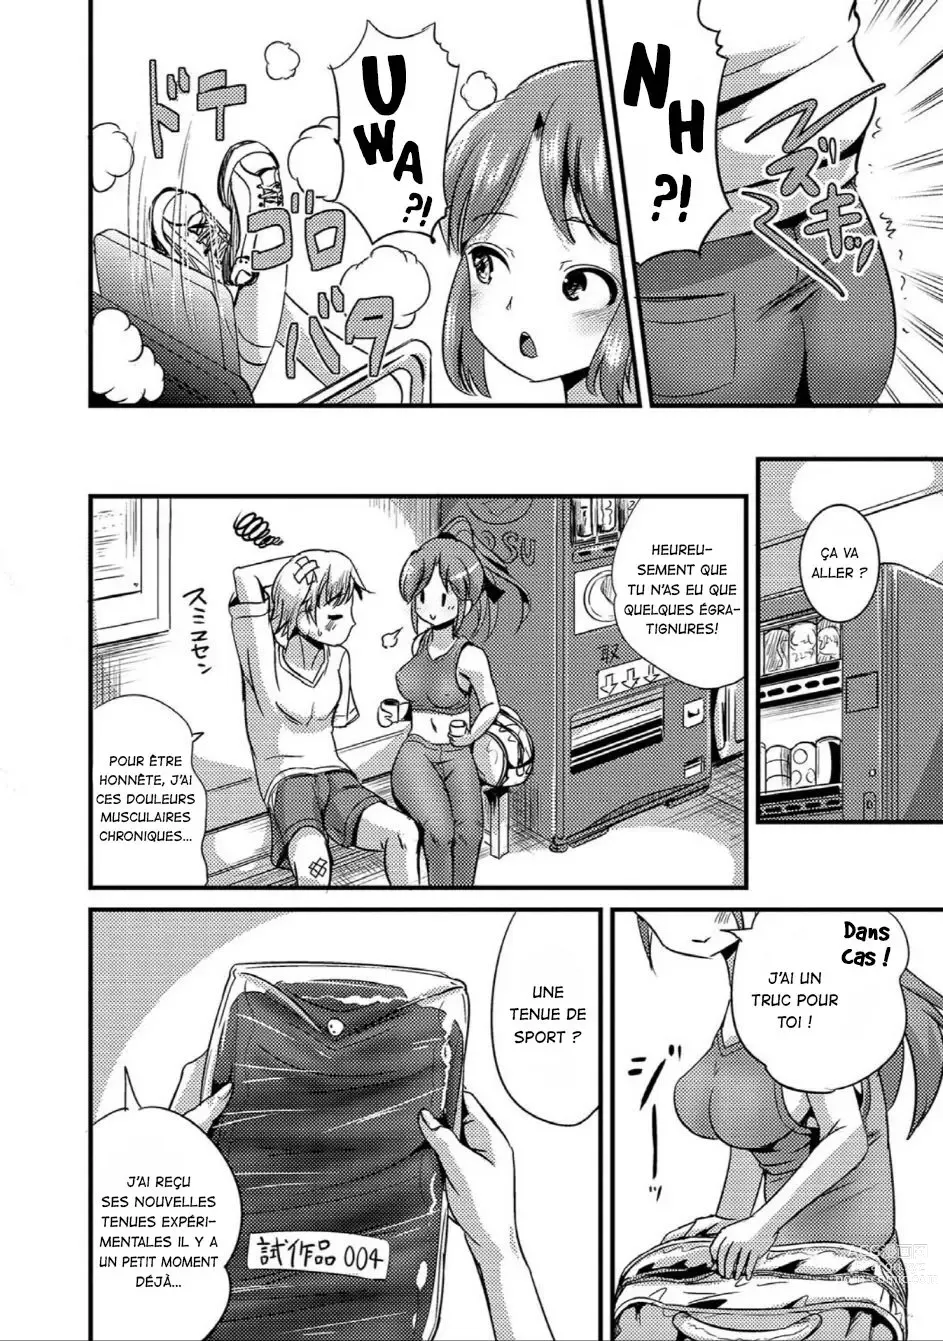 Page 2 of manga TS Tights